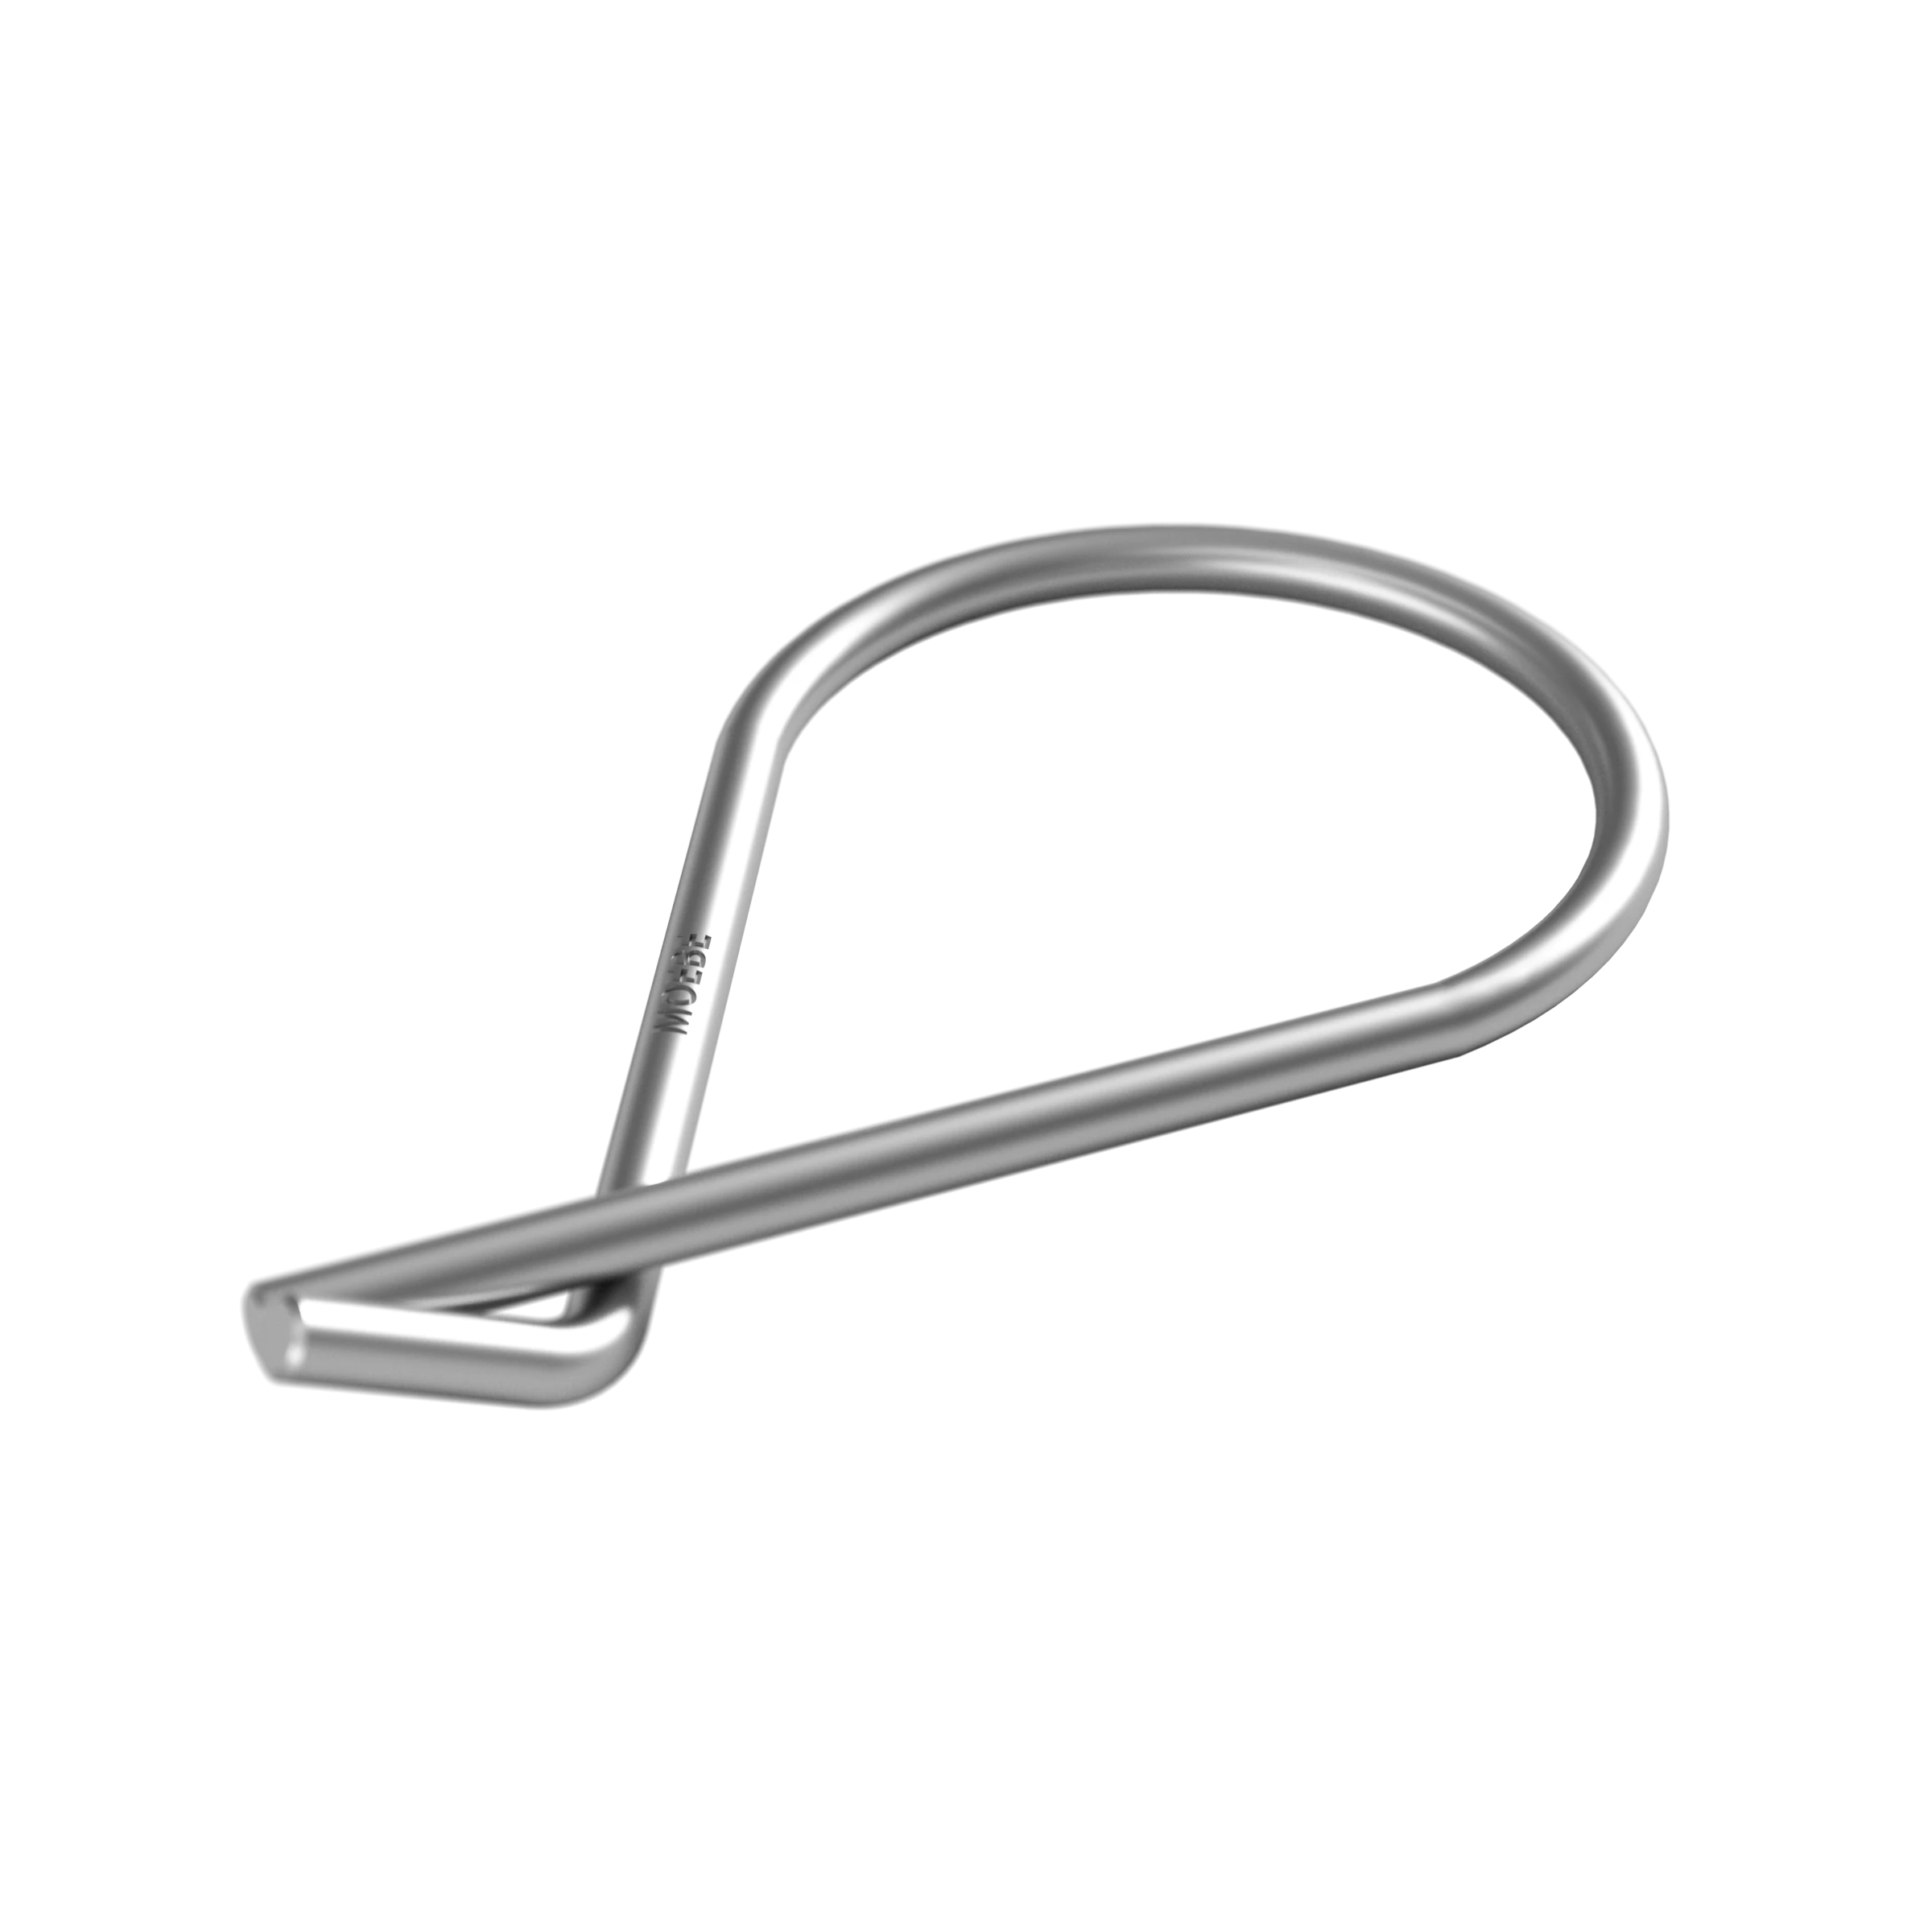 Moebe Key Ring in Brass Or Steel - Lifestory